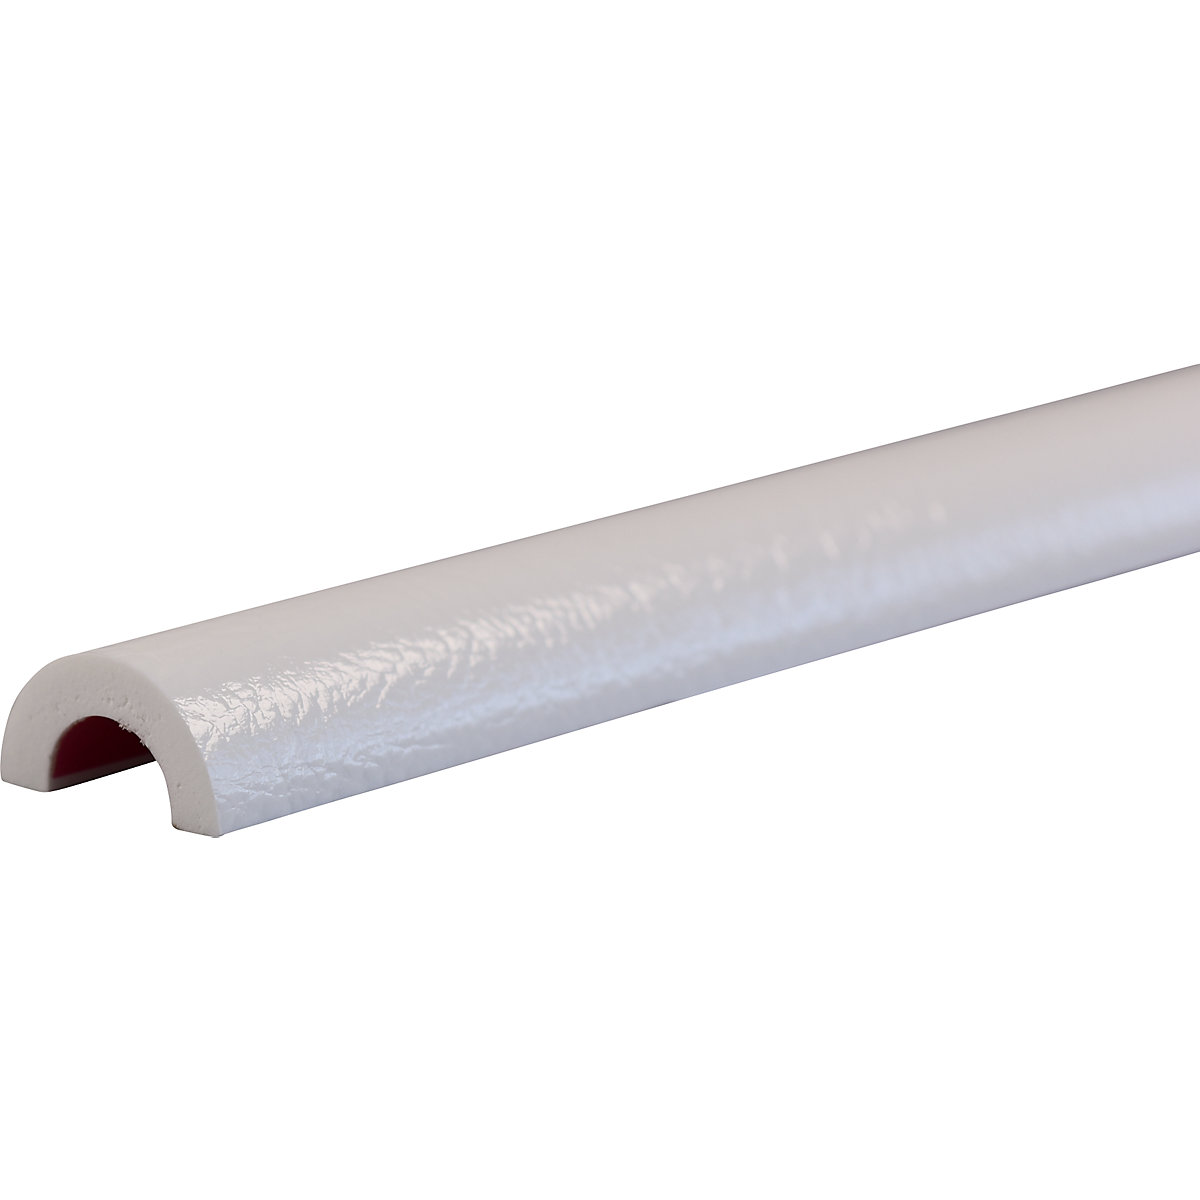 Protection des tuyaux Knuffi® – SHG, type R30, découpe au mètre linéaire, blanc